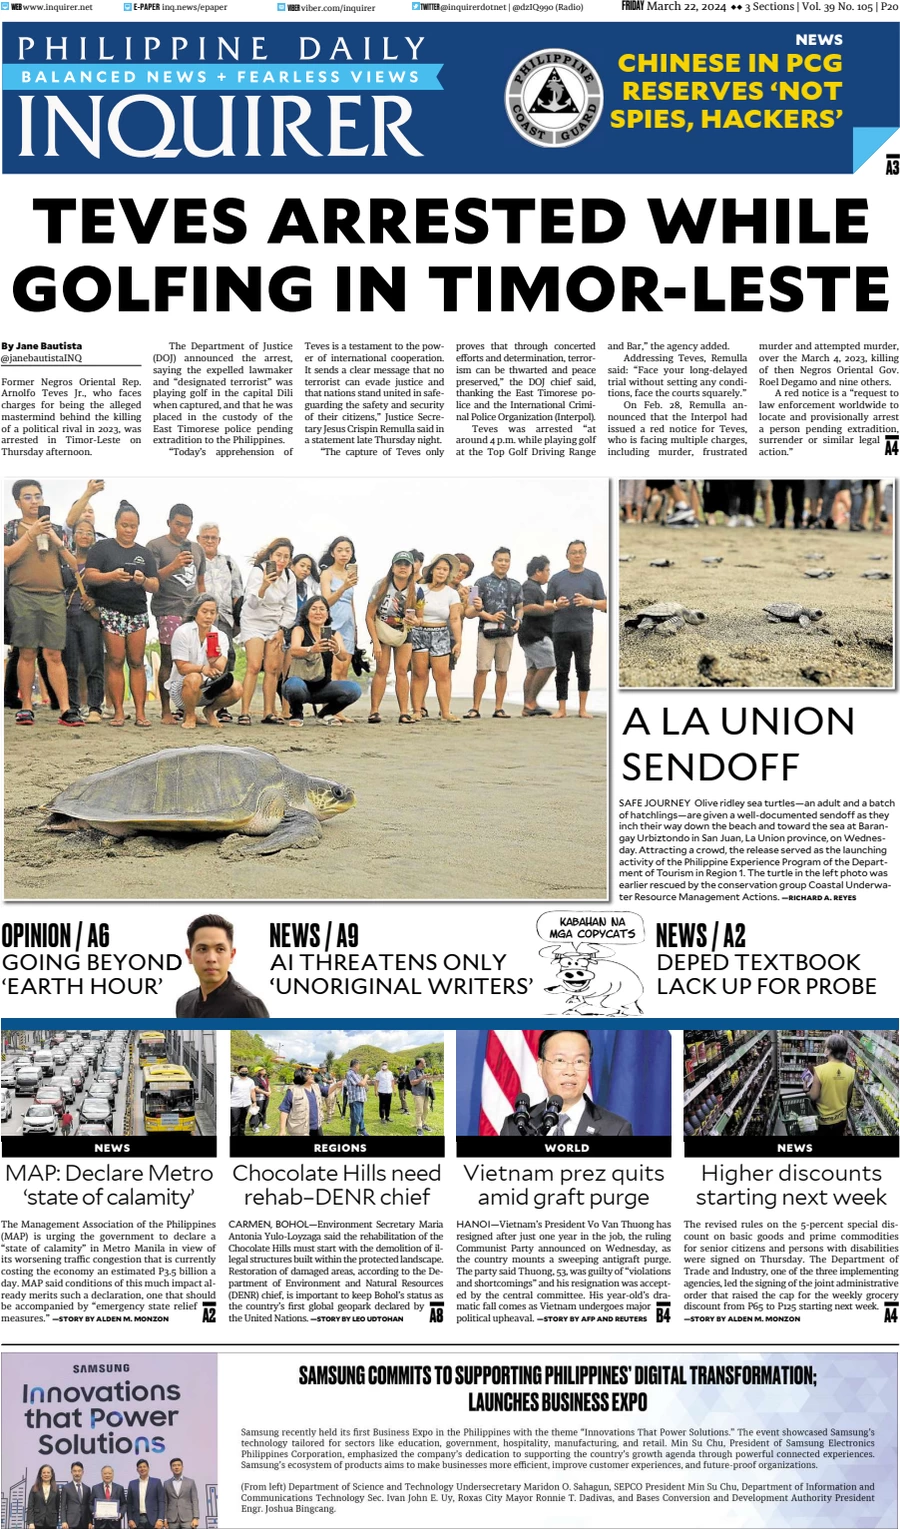 Anteprima prima pagina della rasegna stampa di ieri 2024-03-21 - philippine-daily-inquirer/